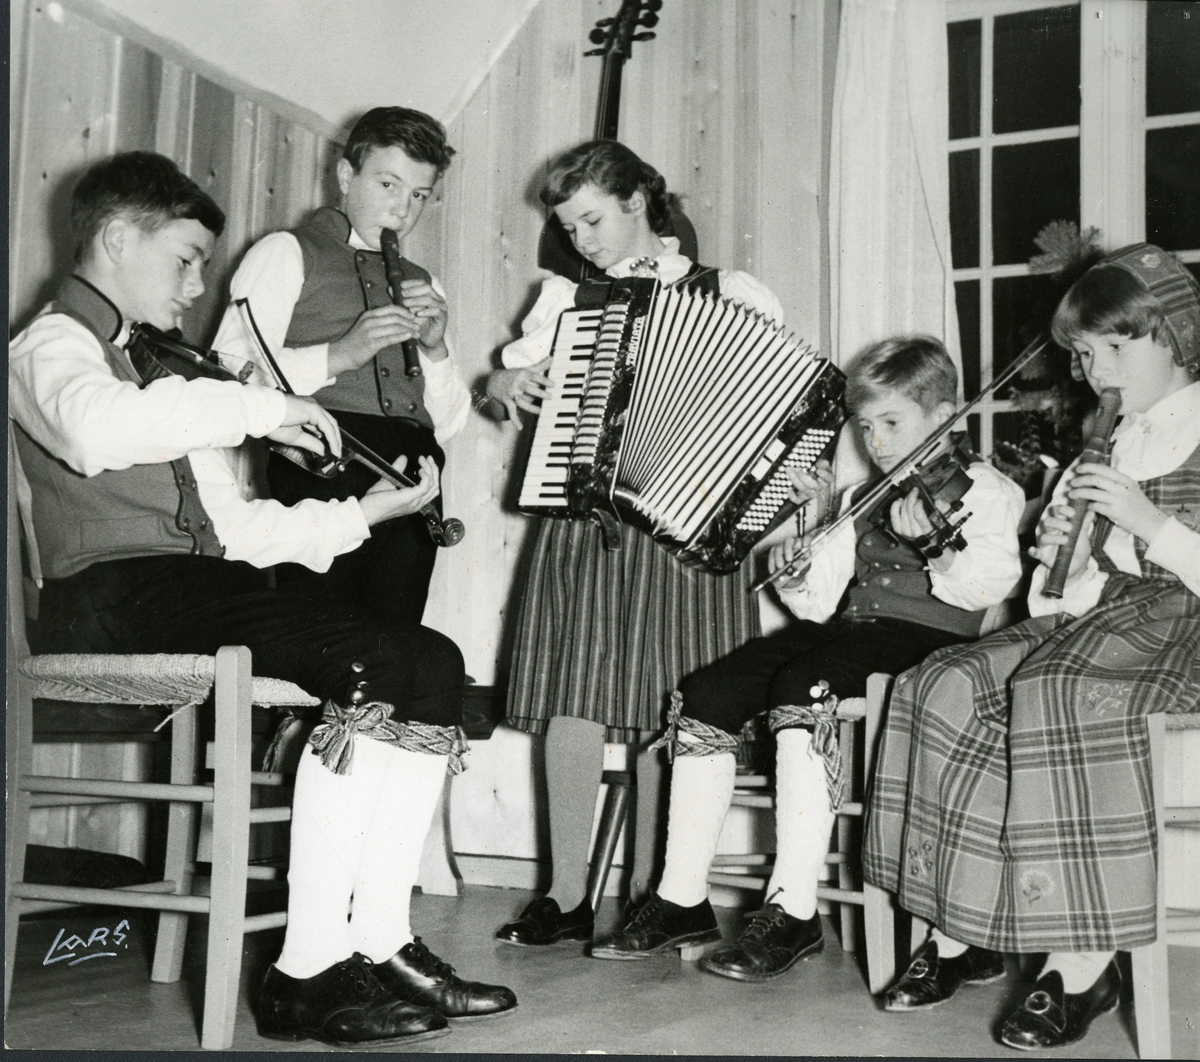 En gruppe barn spiller instrument i forbindelse med en opptreden. Fra venstre: Nicolai Wergeland, Torkel Ranum, usikker, Audun Aune og Ebba Wergeland.